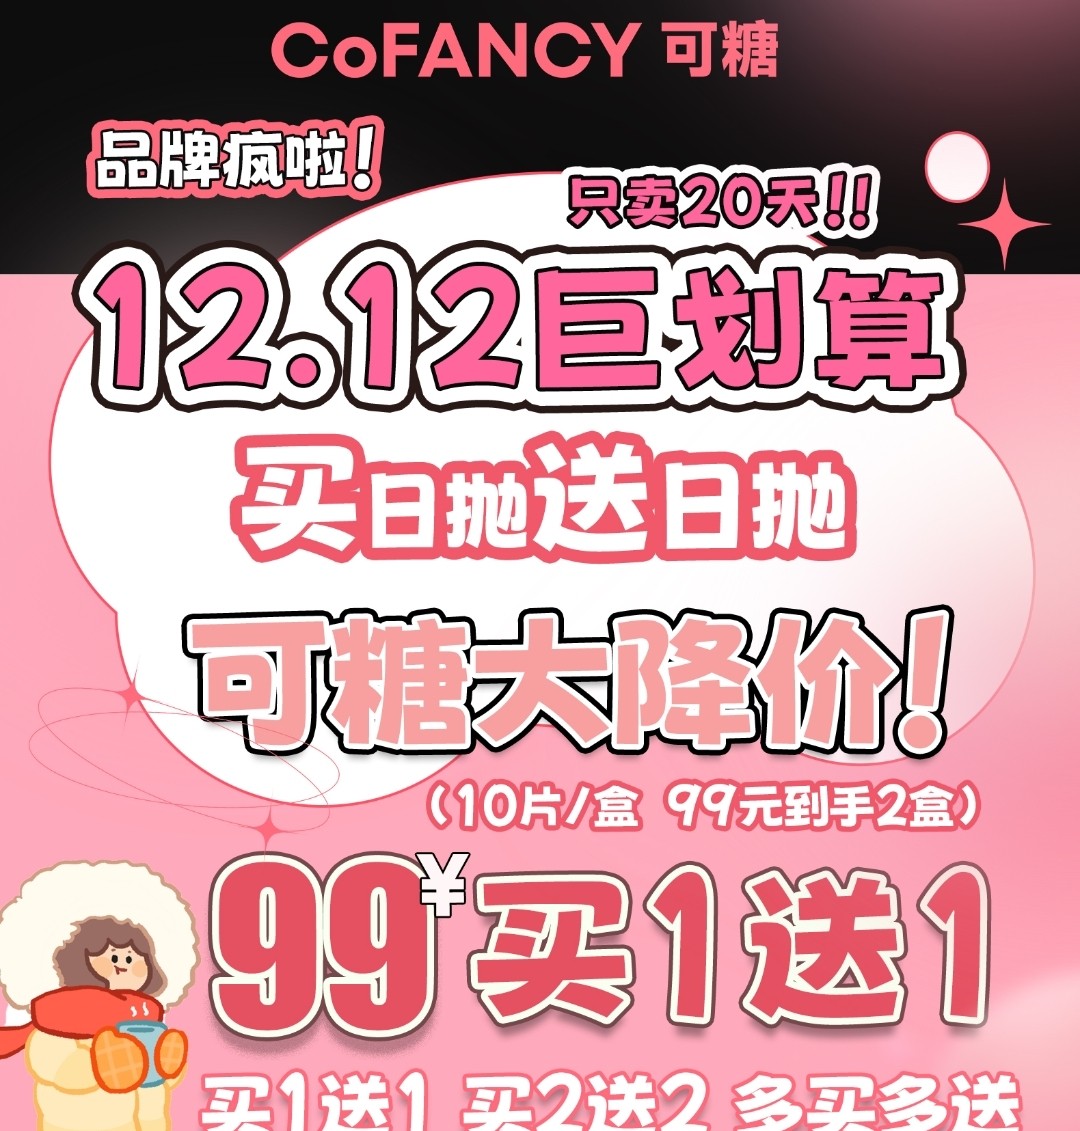 【日抛】CoFANCY可糖 12.12巨划算 买日抛送日抛 可糖大降价!